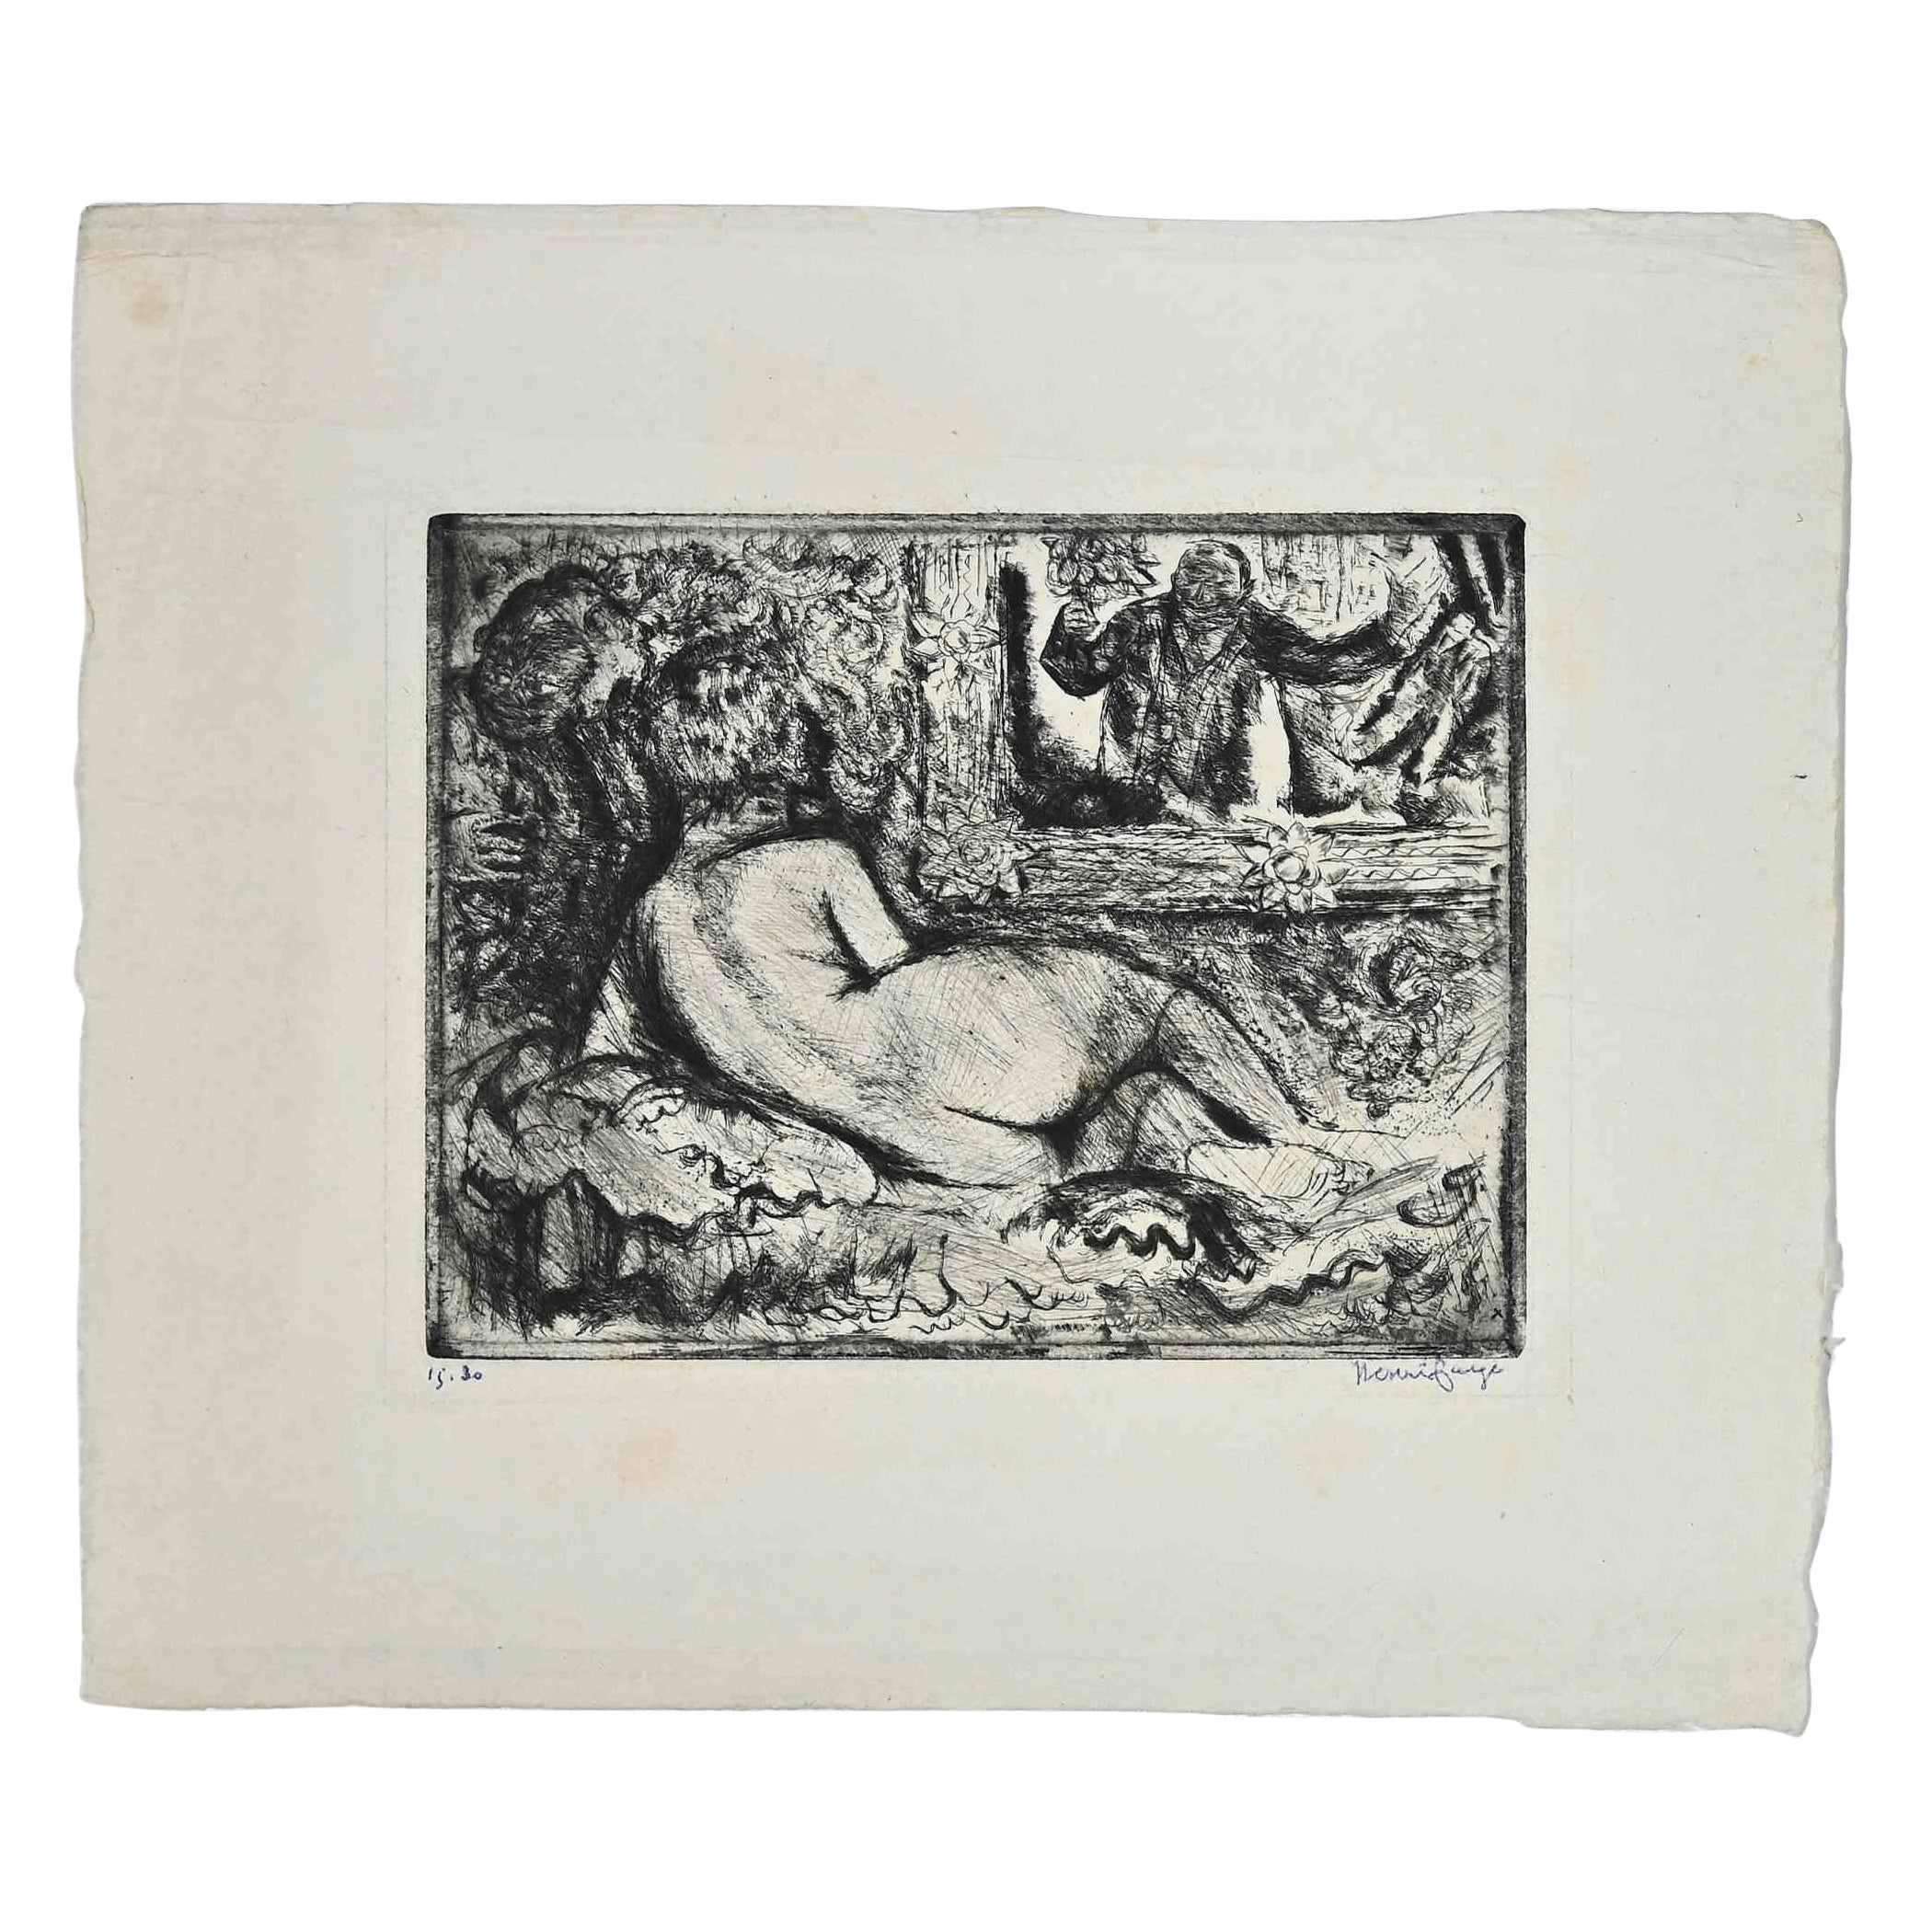 Der Rückenakt ist ein modernes Kunstwerk, das der französische Künstler in den ersten Jahrzehnten des 20  Henri Farge  (1884-1970).

Original-Radierung auf Elfenbeinpapier. 

Vom Künstler in der rechten unteren Ecke mit Feder signiert.

Nummeriert,